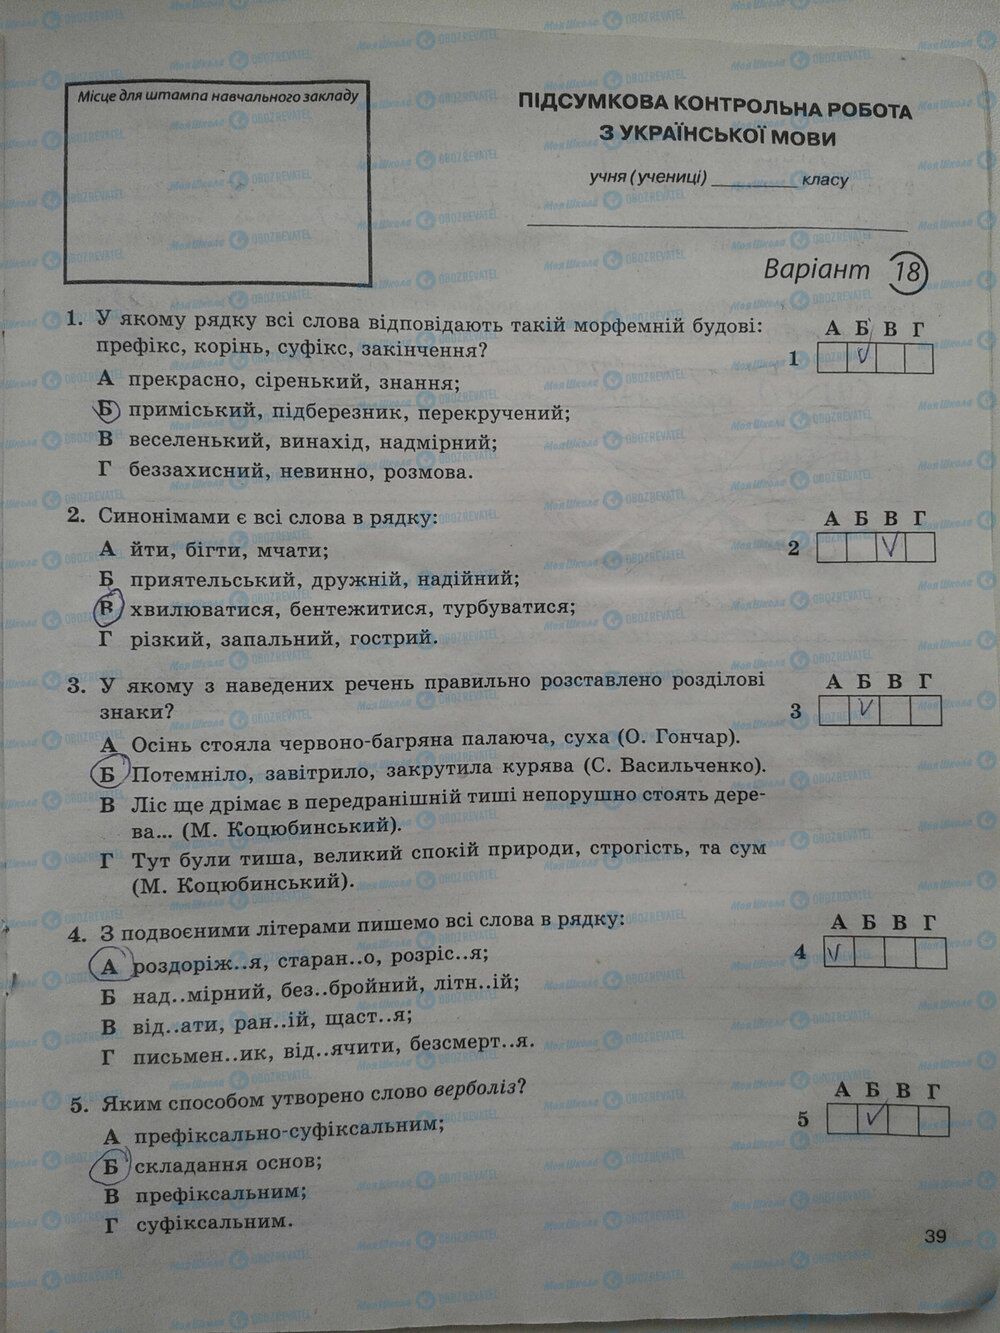 ГДЗ Укр мова 5 класс страница стр. 39